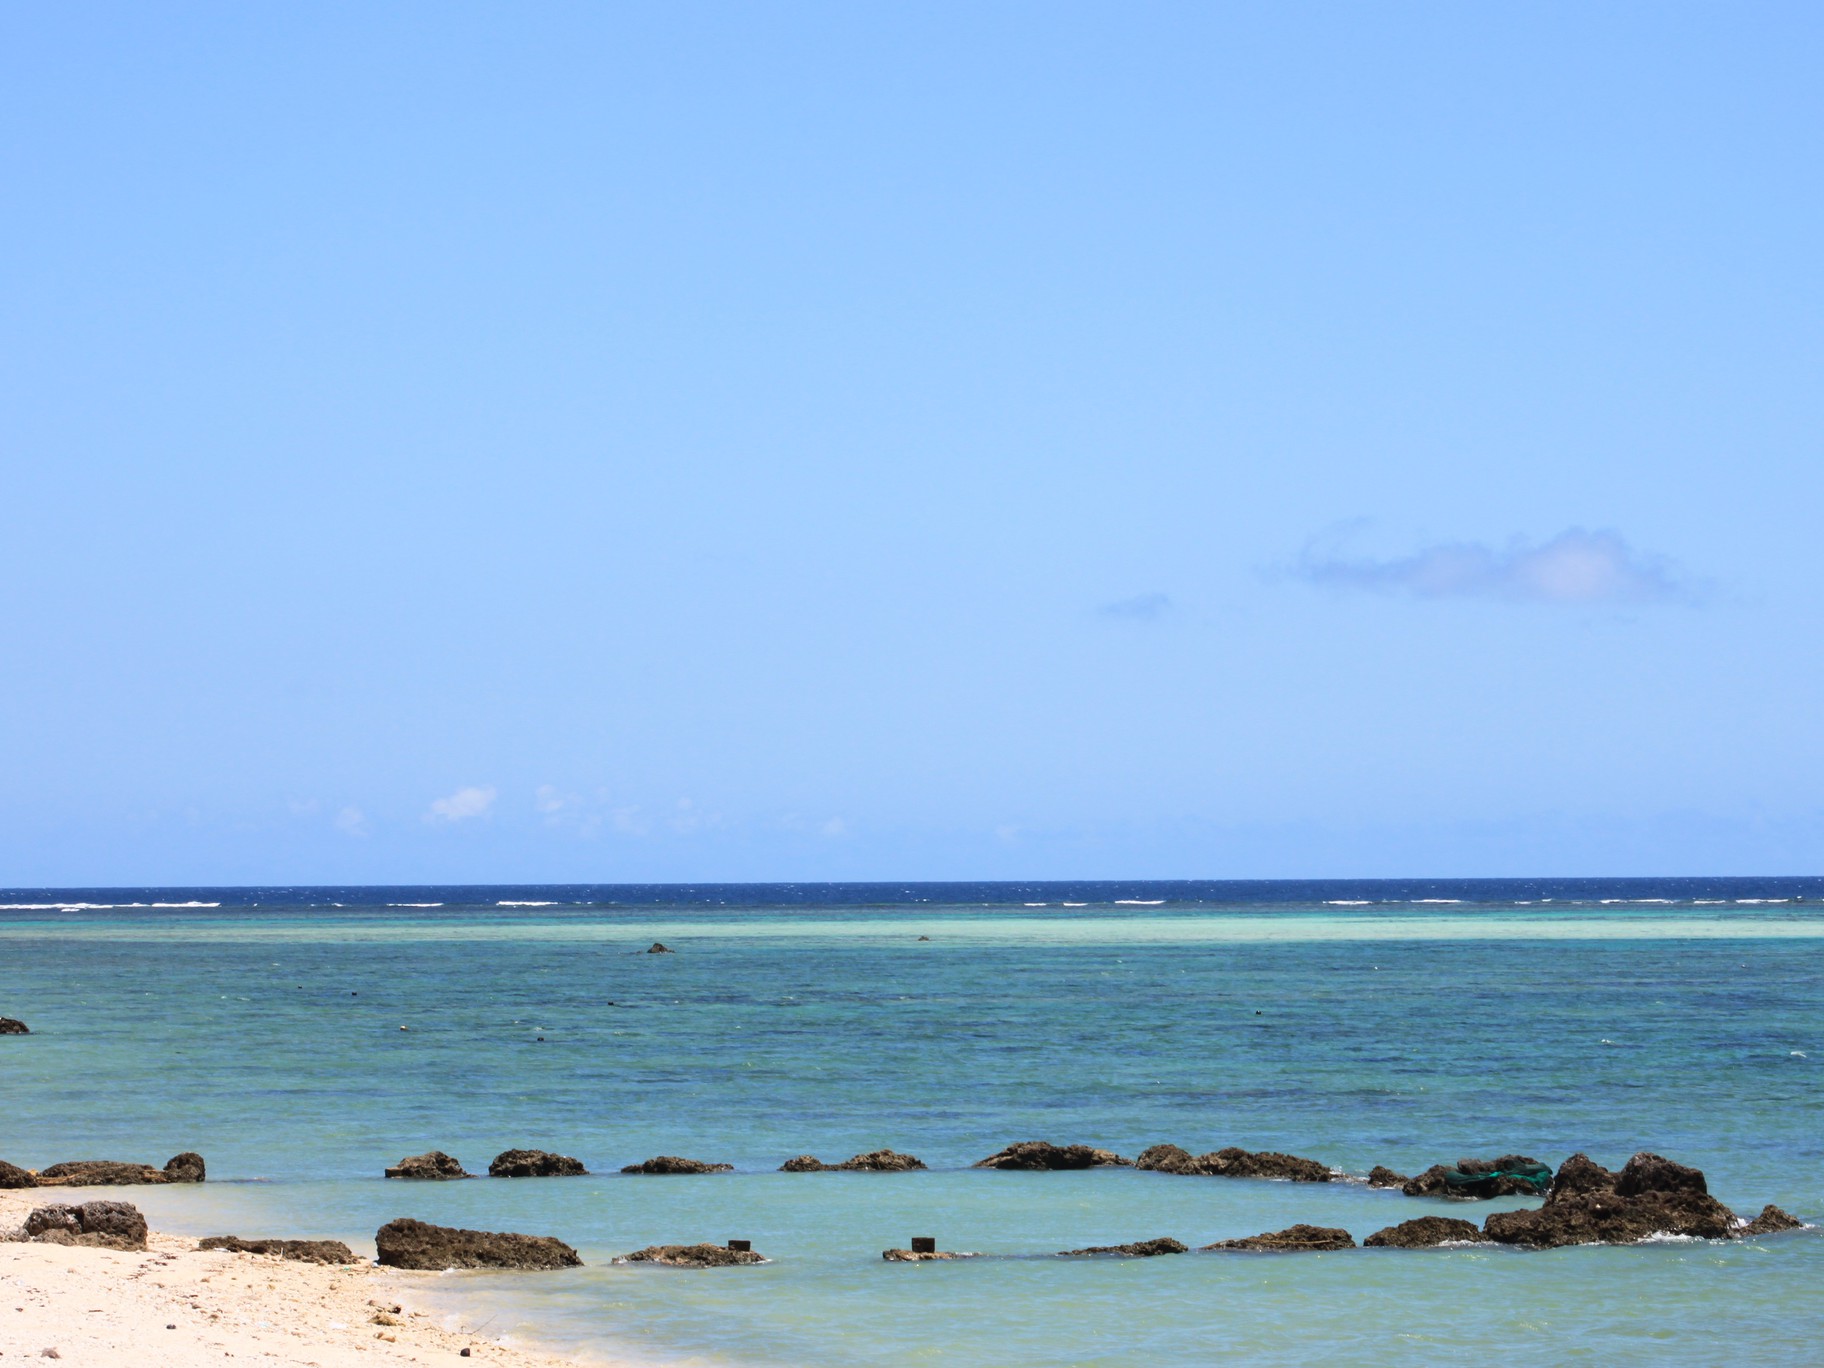 【白保海岸】ホテルから車で約20分。サンゴ礁が群生をなす美しいビーチ。